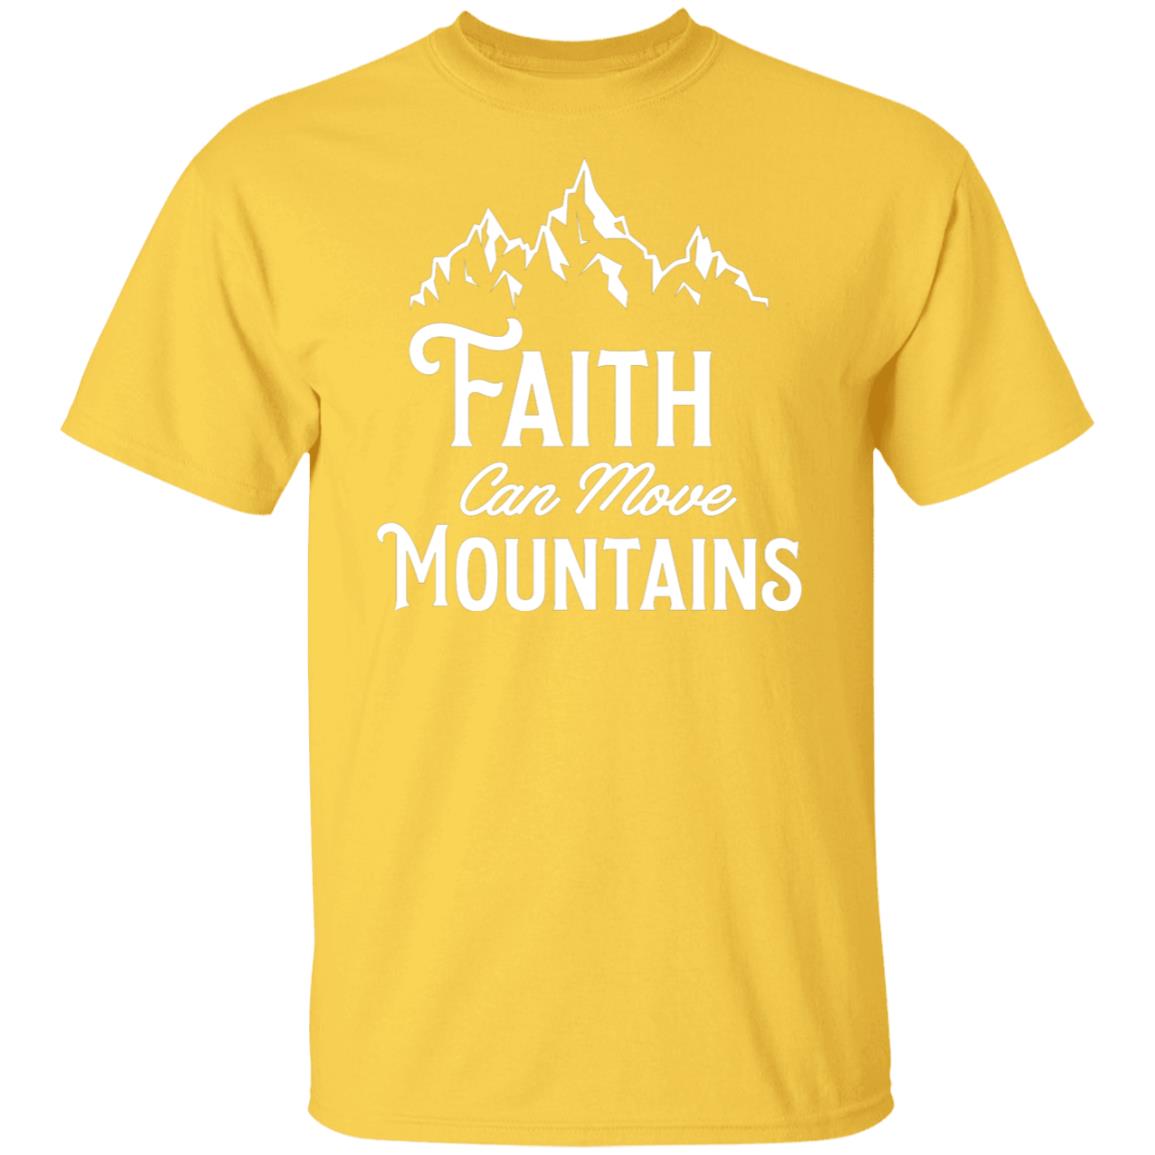 Faith can move Mountains tshirt